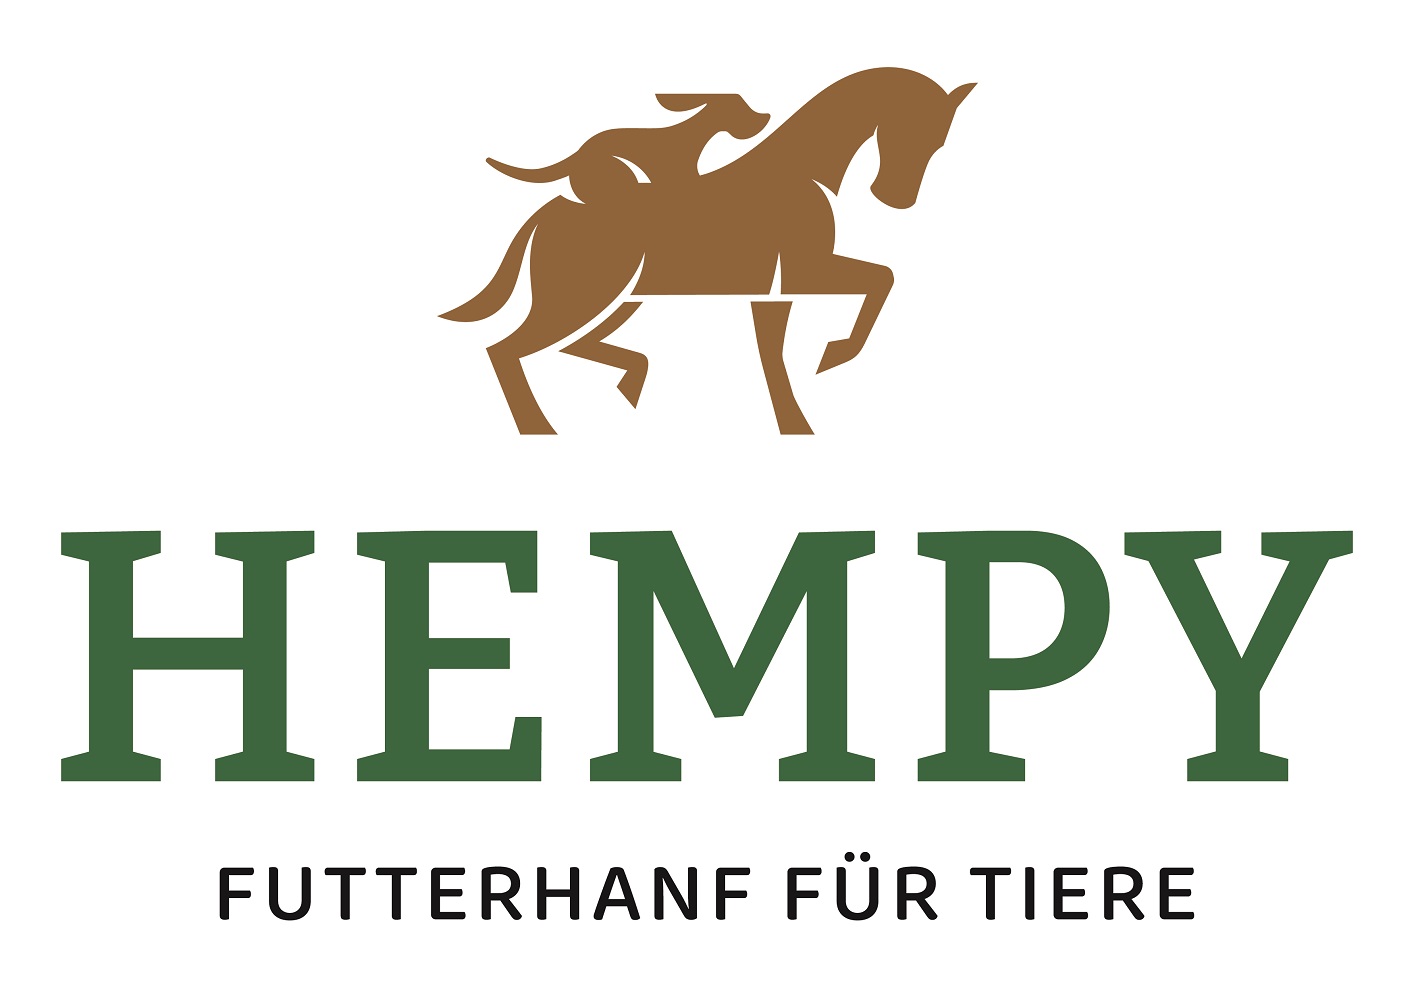 Hempy futterhanf logo von von hanfland